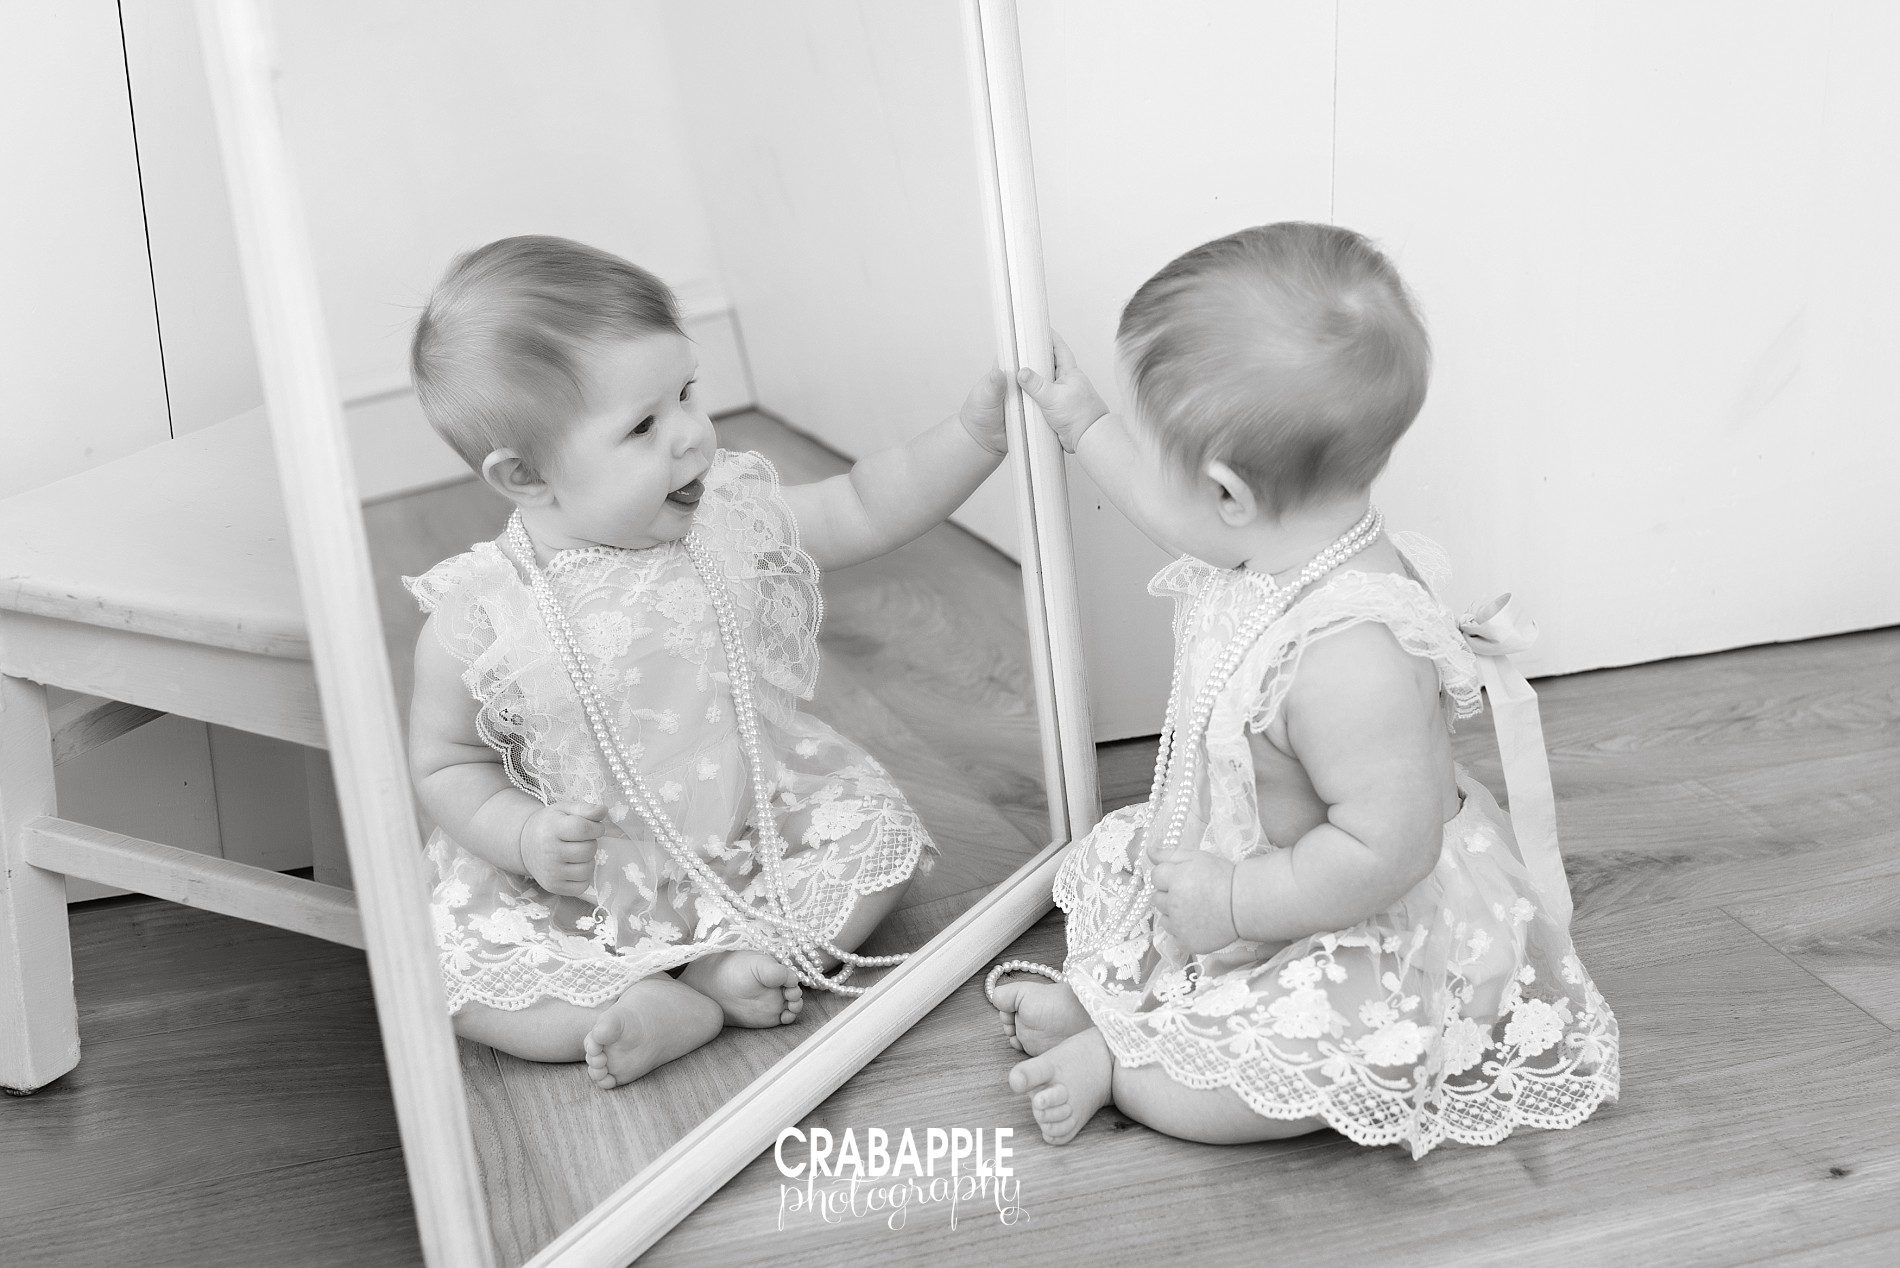 posing baby photos with a mirror